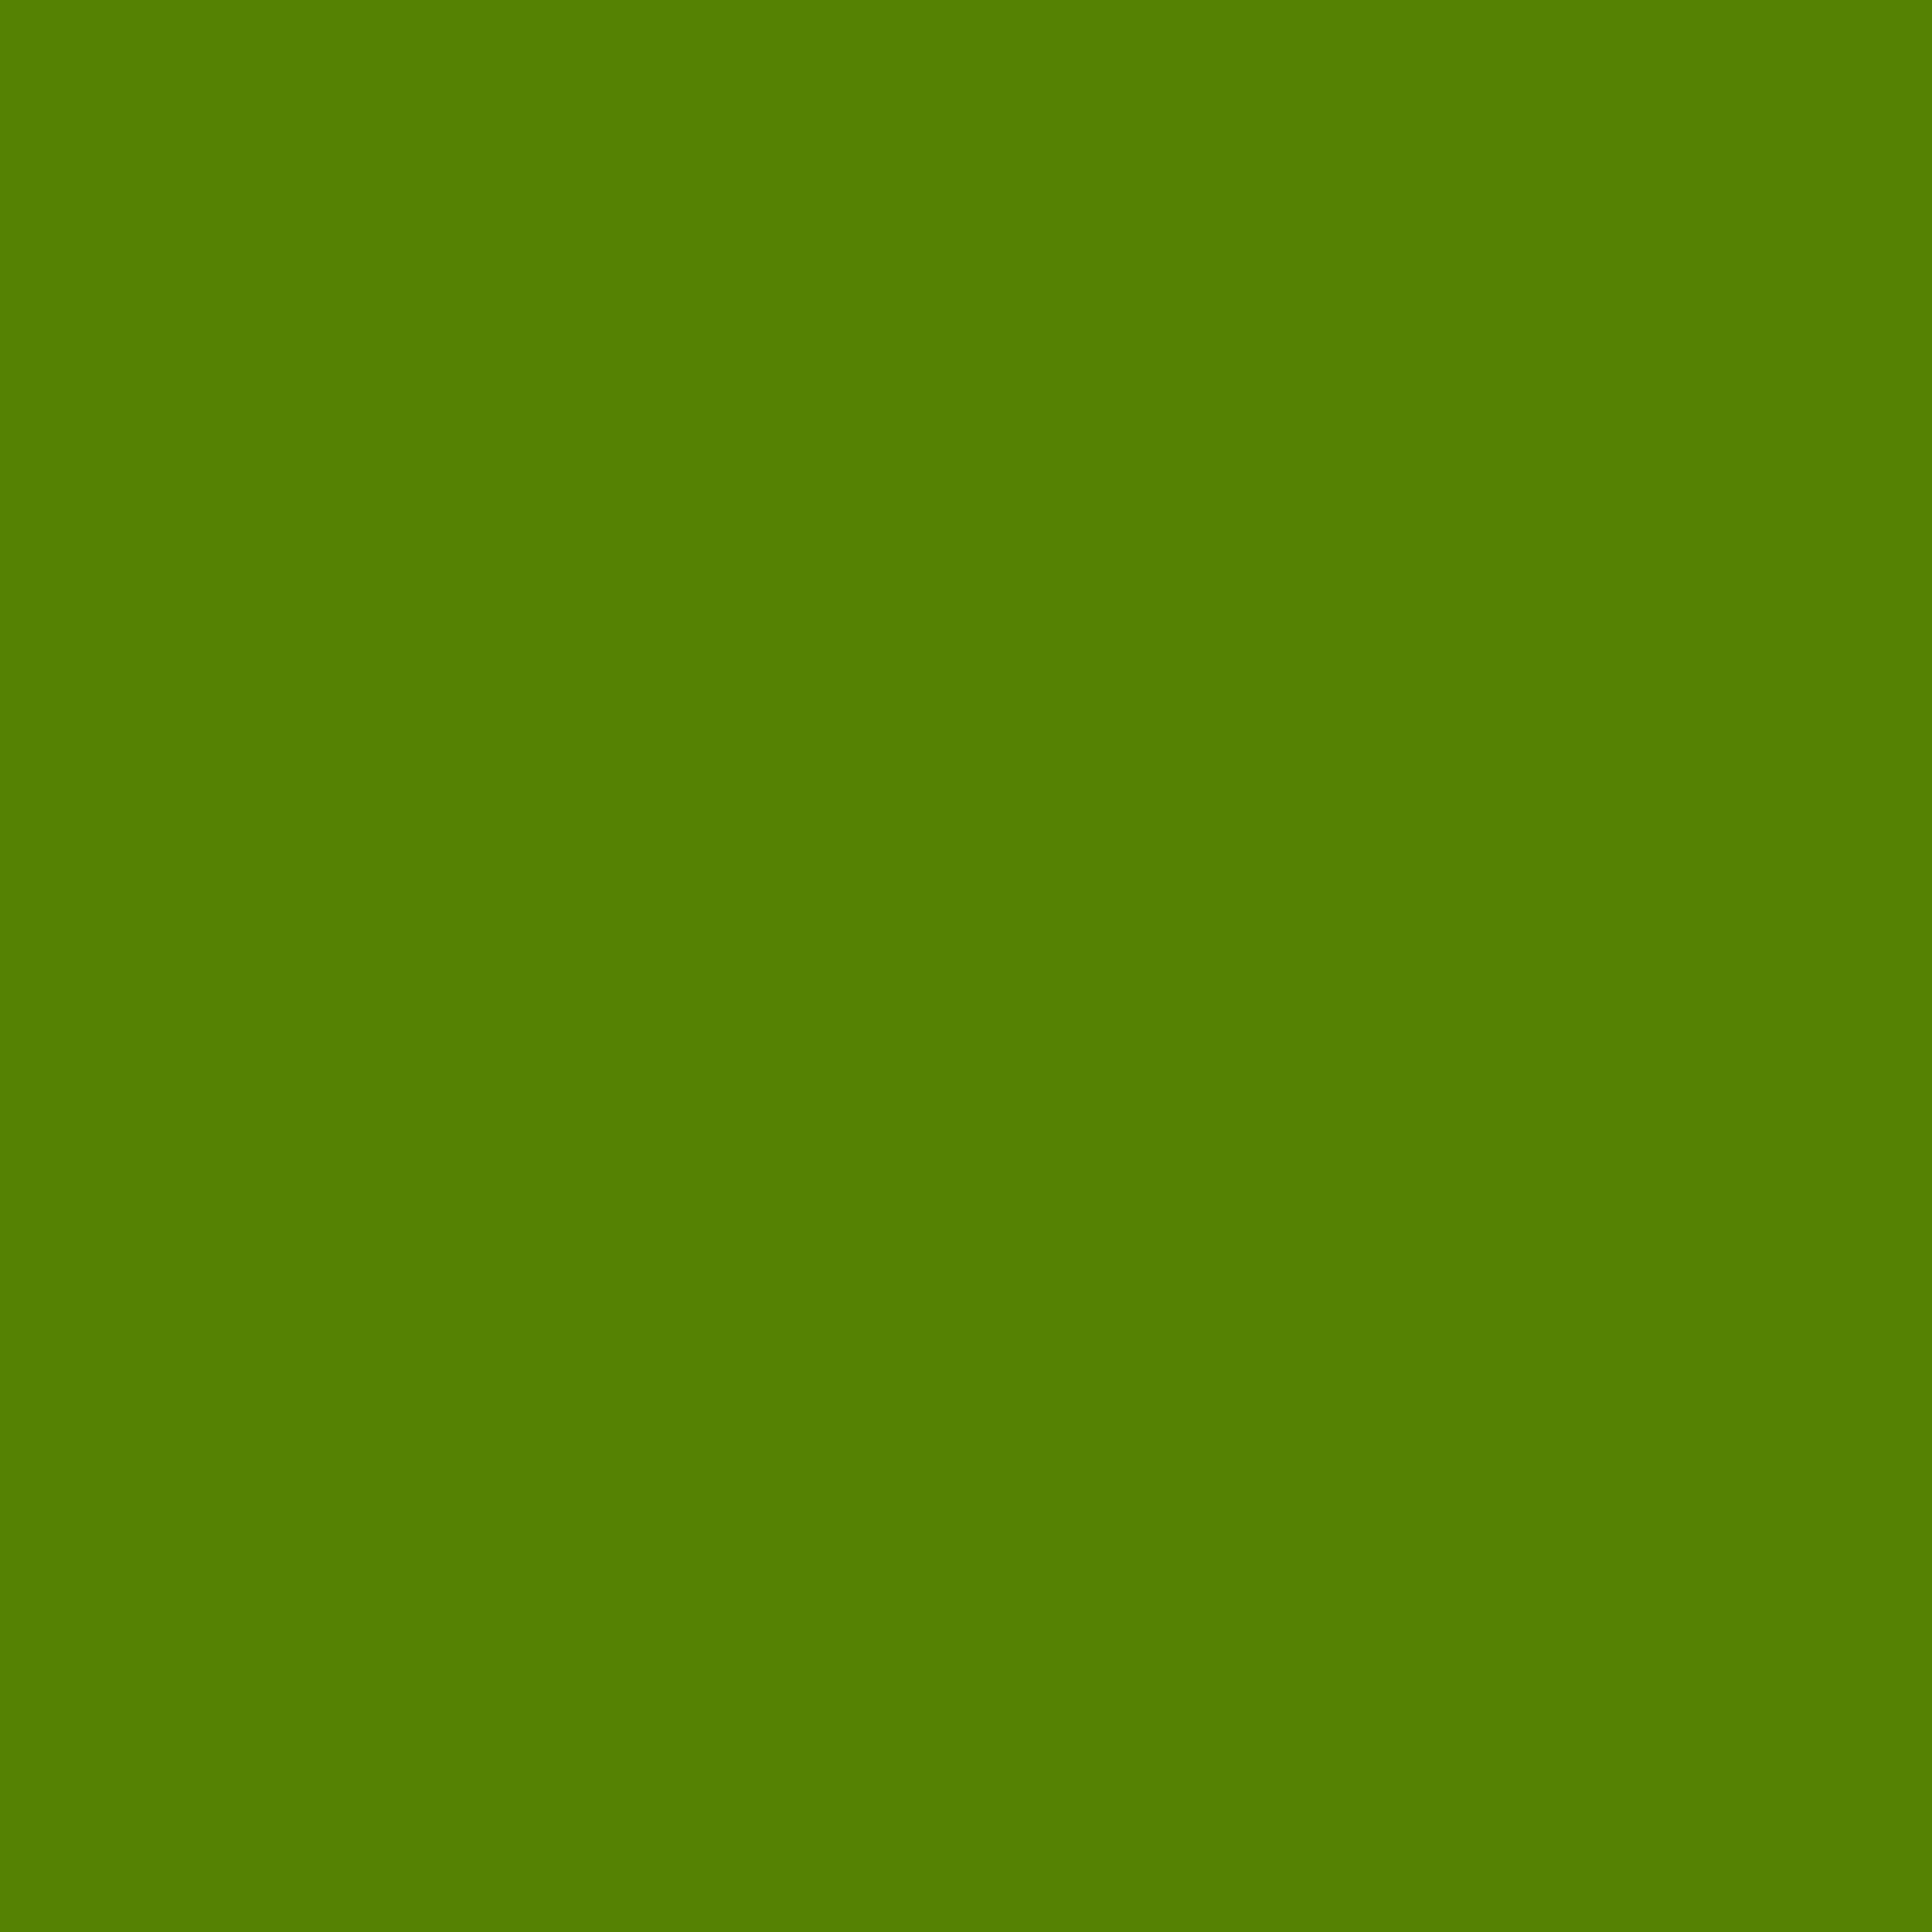 2732x2732 Avocado Solid Color Background